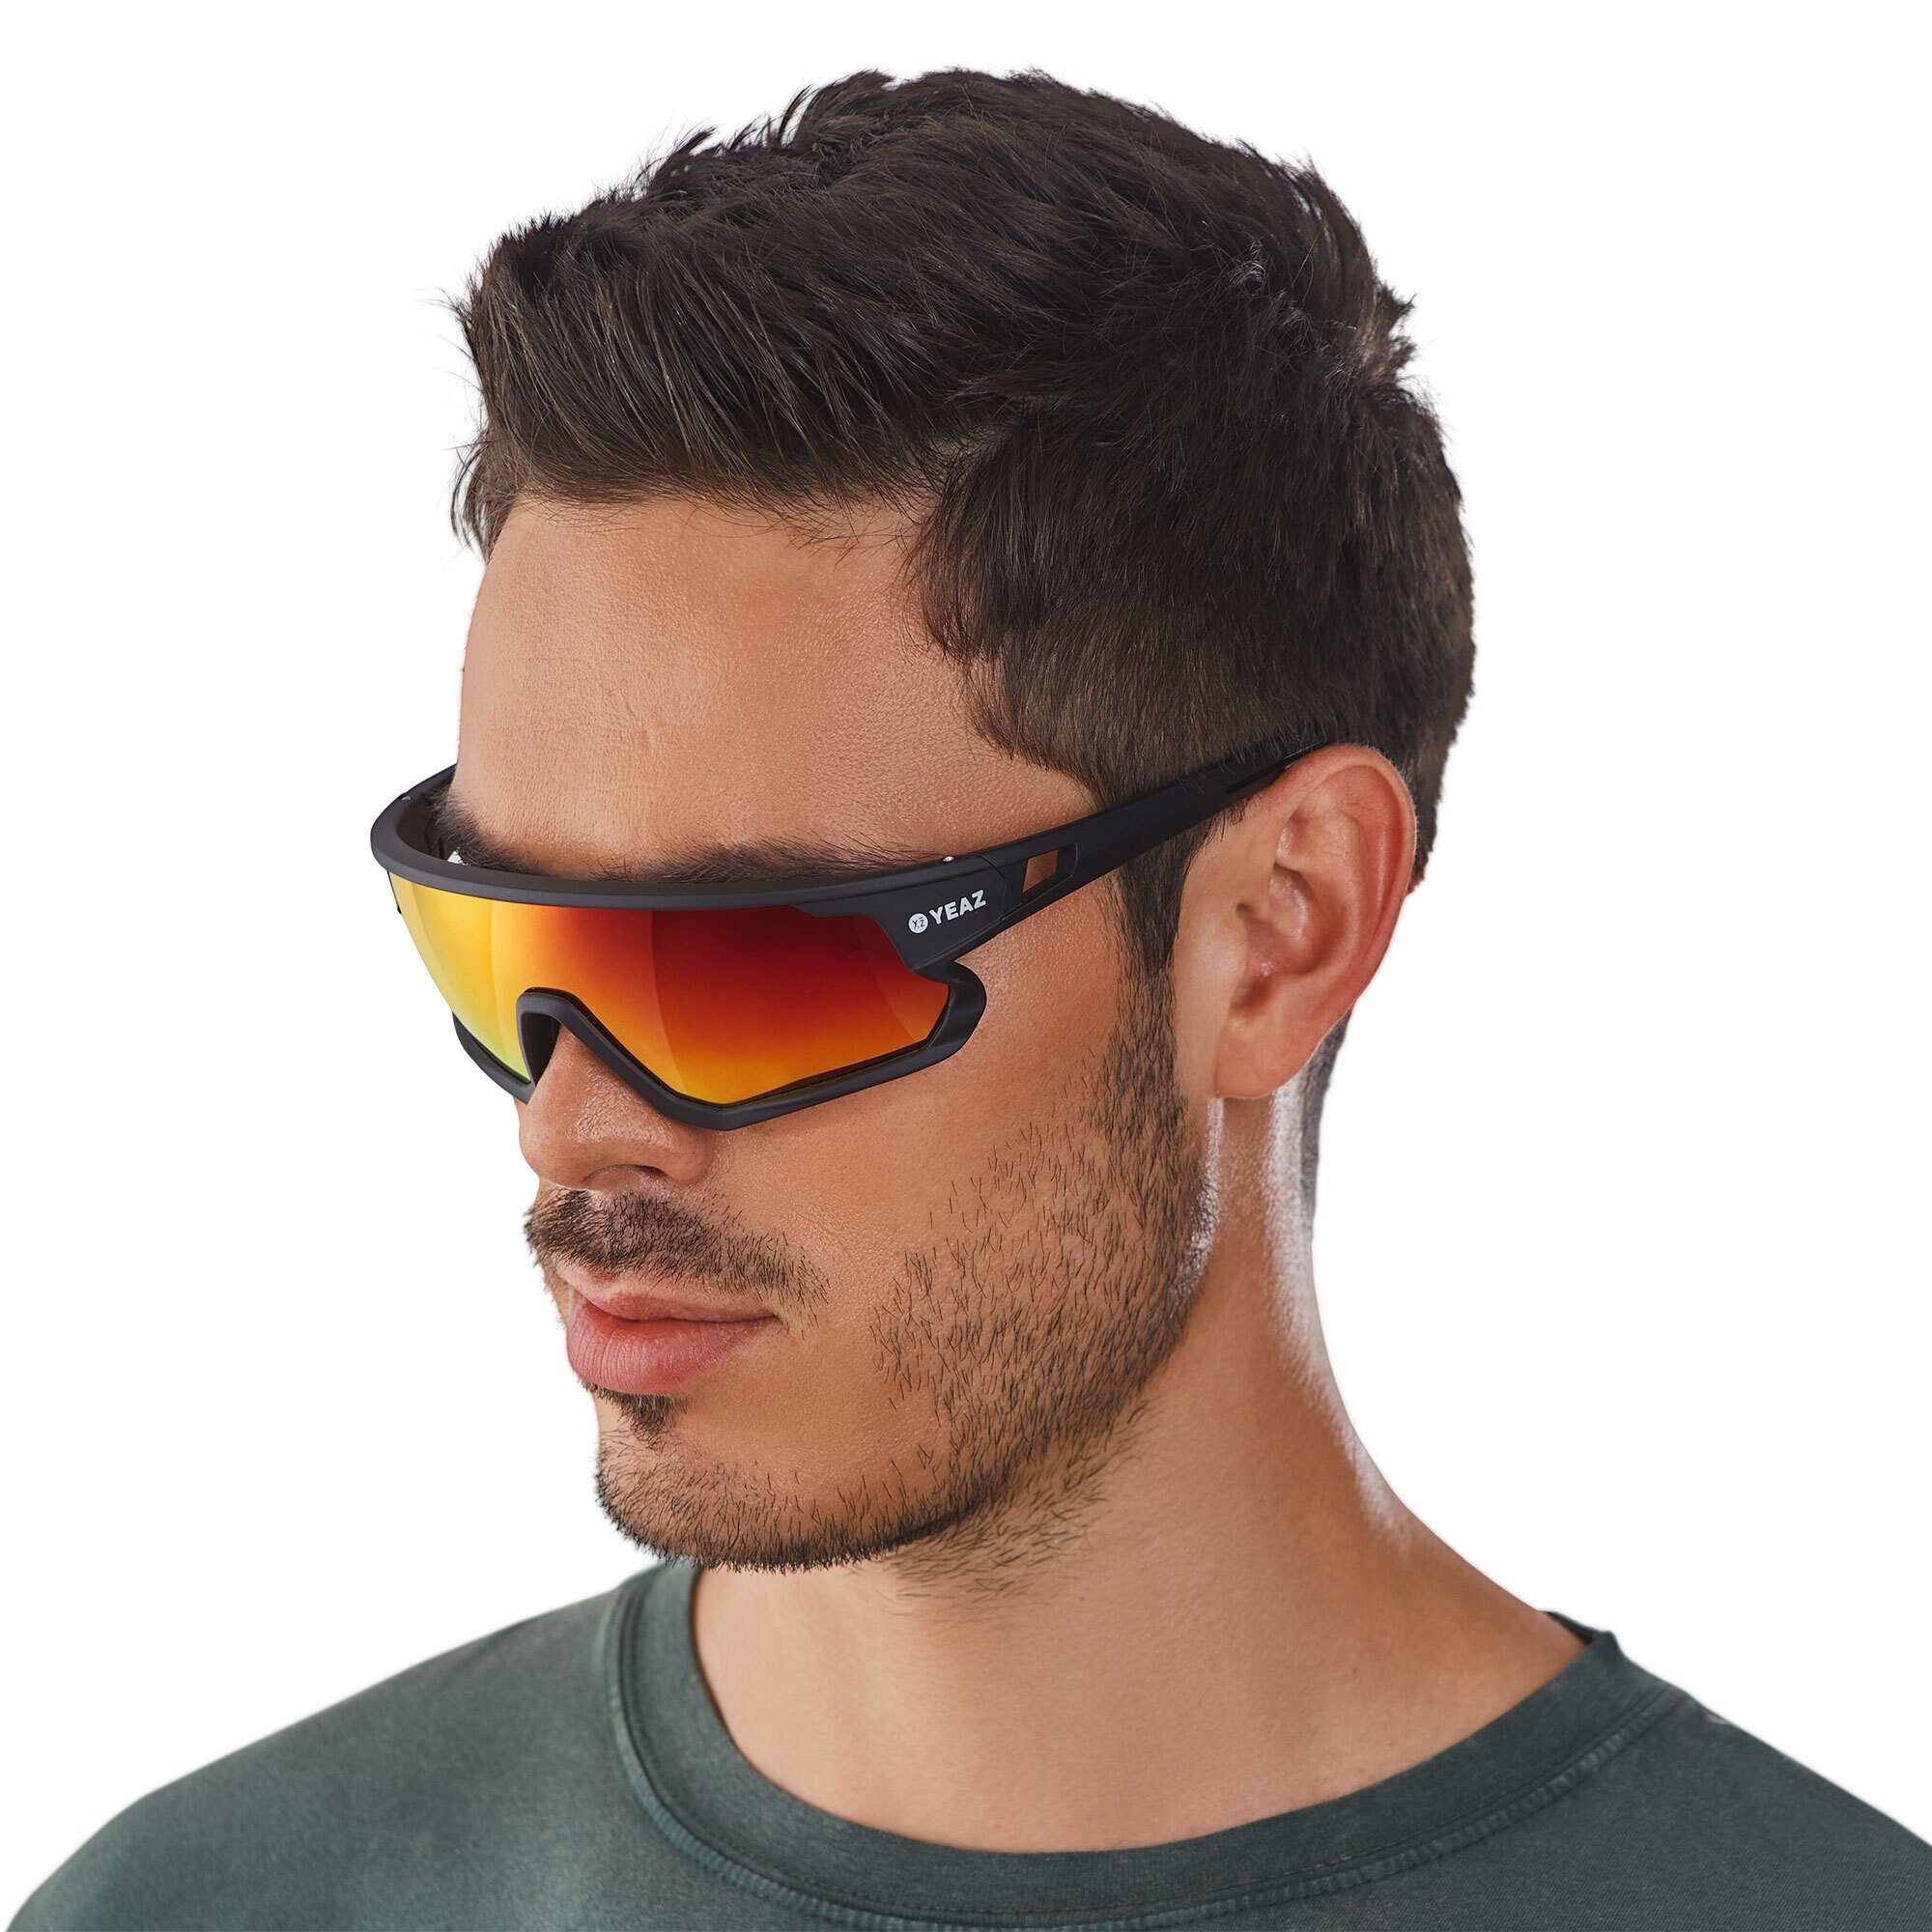 Sicht sport-sonnenbrille SUNRISE Guter Sportbrille black/red, YEAZ bei optimierter Schutz